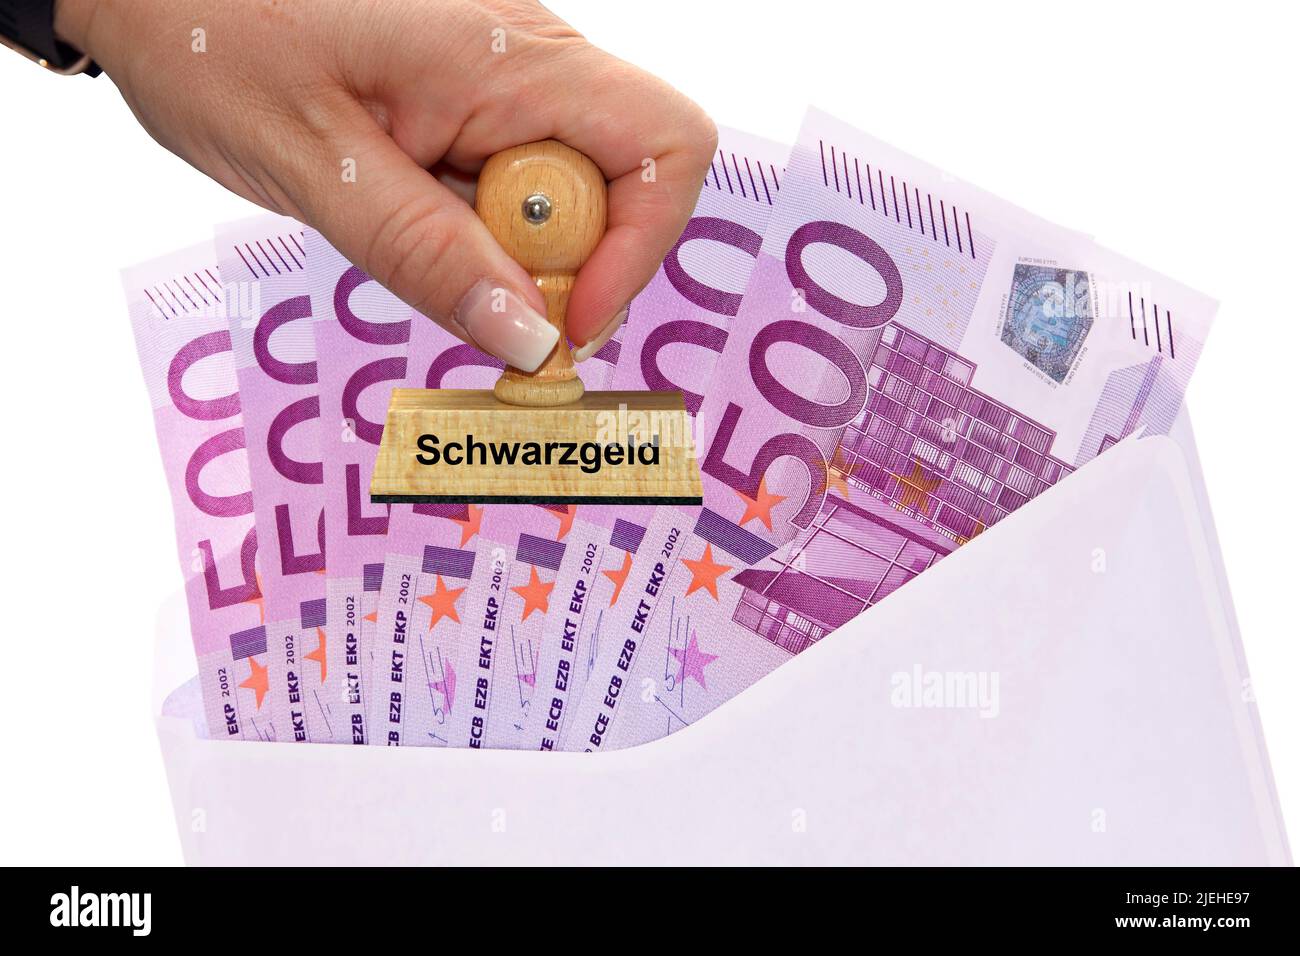 Schwarzgeld, Steuerfrei, Finanzamt, Viele 500 Euro Banknoten der  Europaäschen Union im Briefumschlag Stock Photo